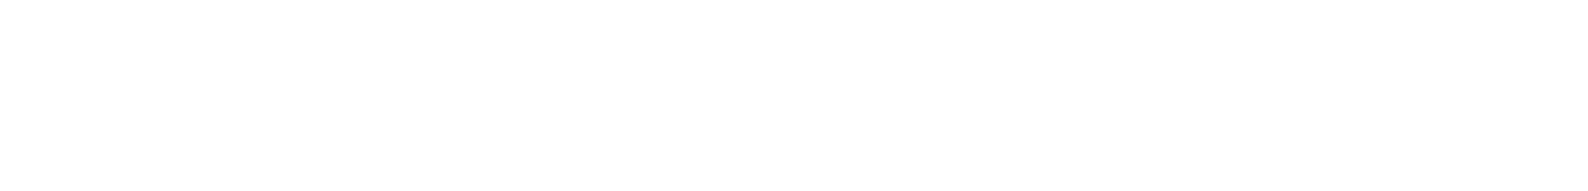 Albemarle logo large for dark backgrounds (transparent PNG)